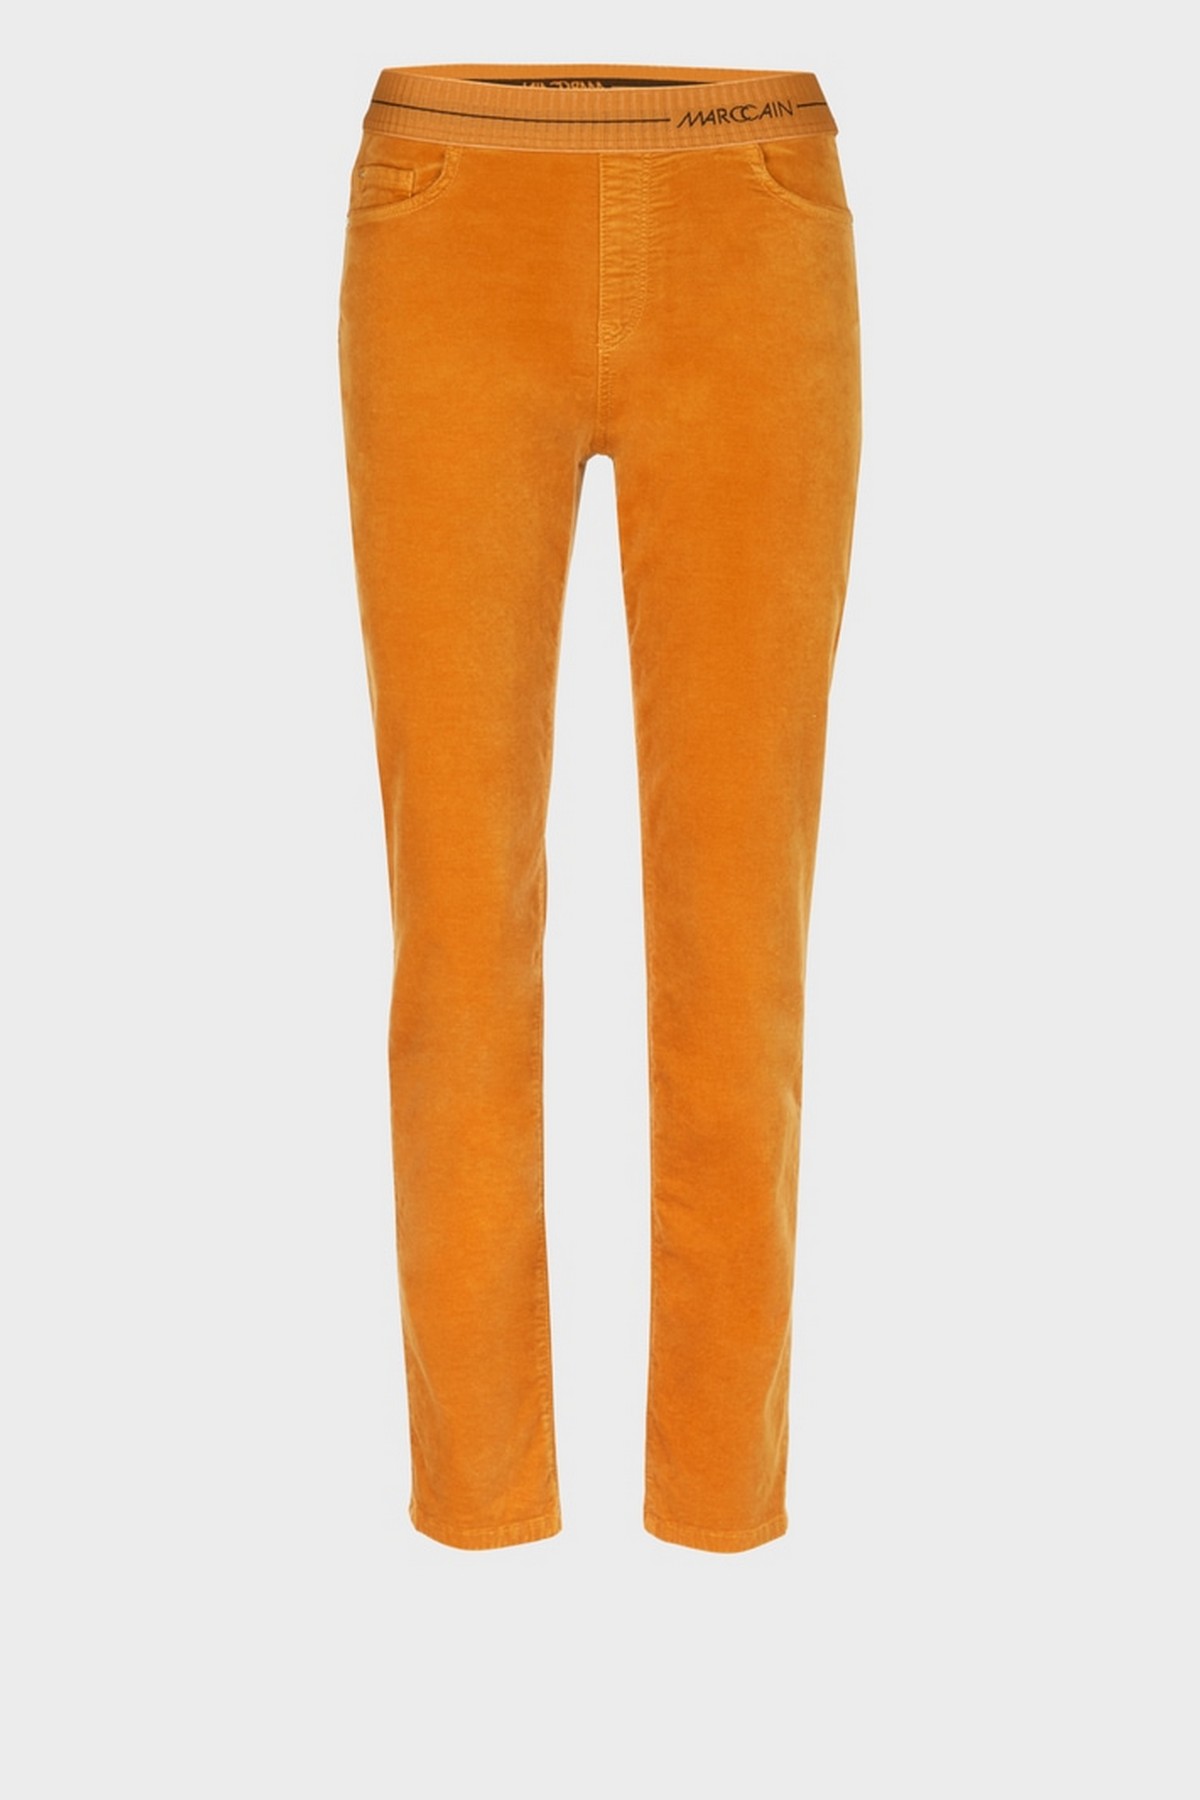 Broek slim fit in de kleur deep pumpkin van het merk Marc Cain Collections